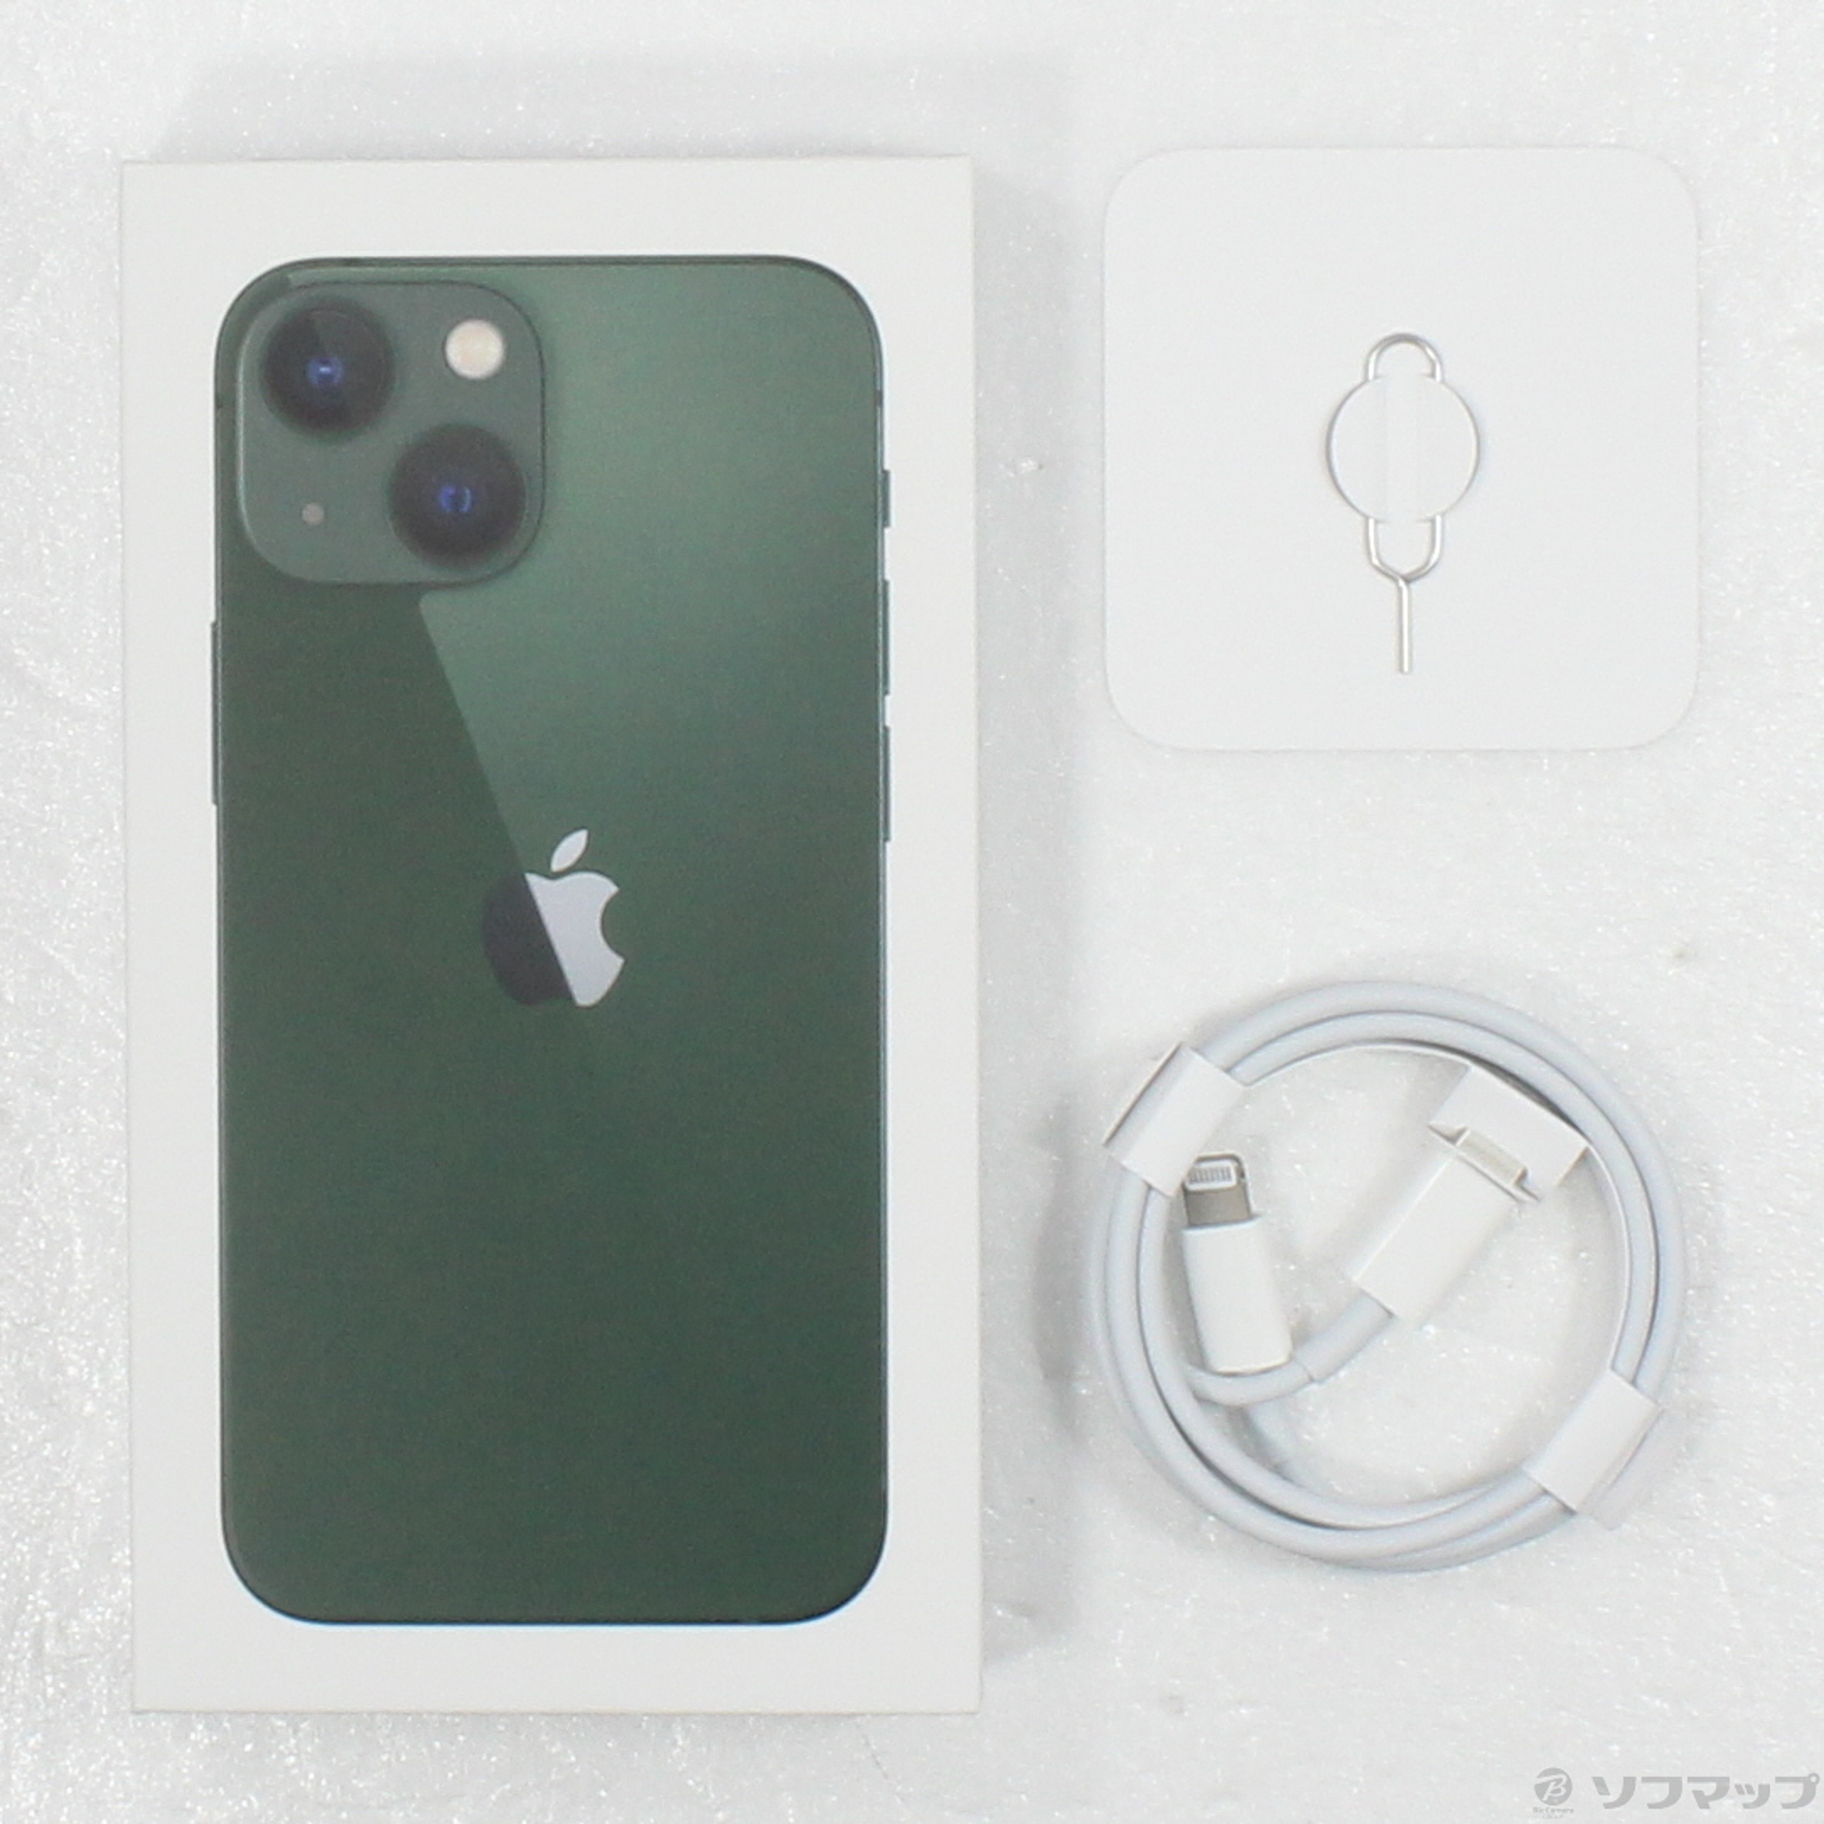 売れ筋アイテムラン iPhone 13 mini グリーン 128GB - スマートフォン 